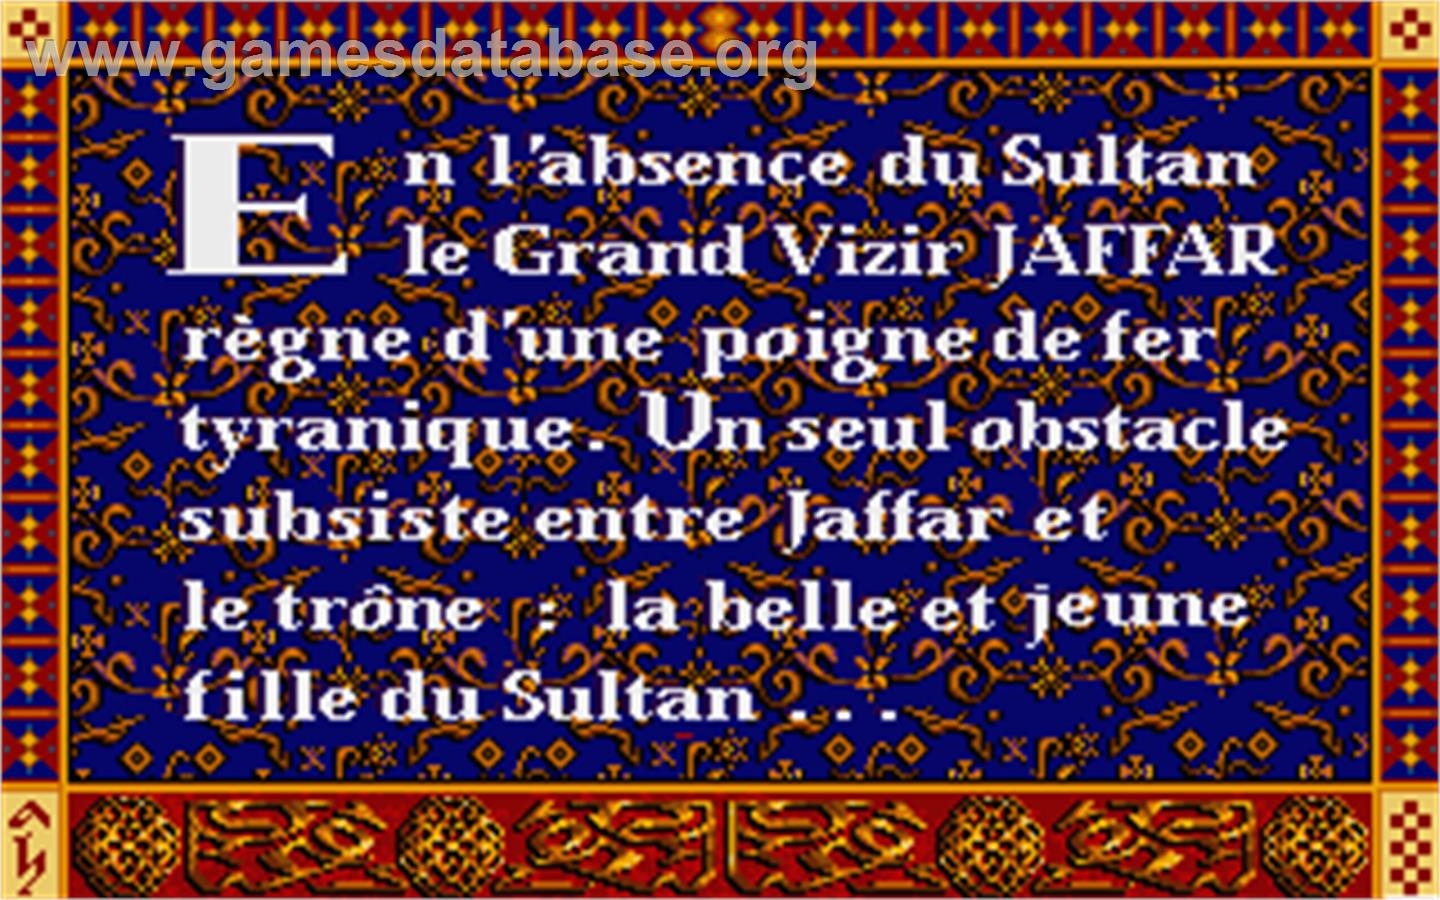 Prince of Persia - Atari ST - Artwork - In Game